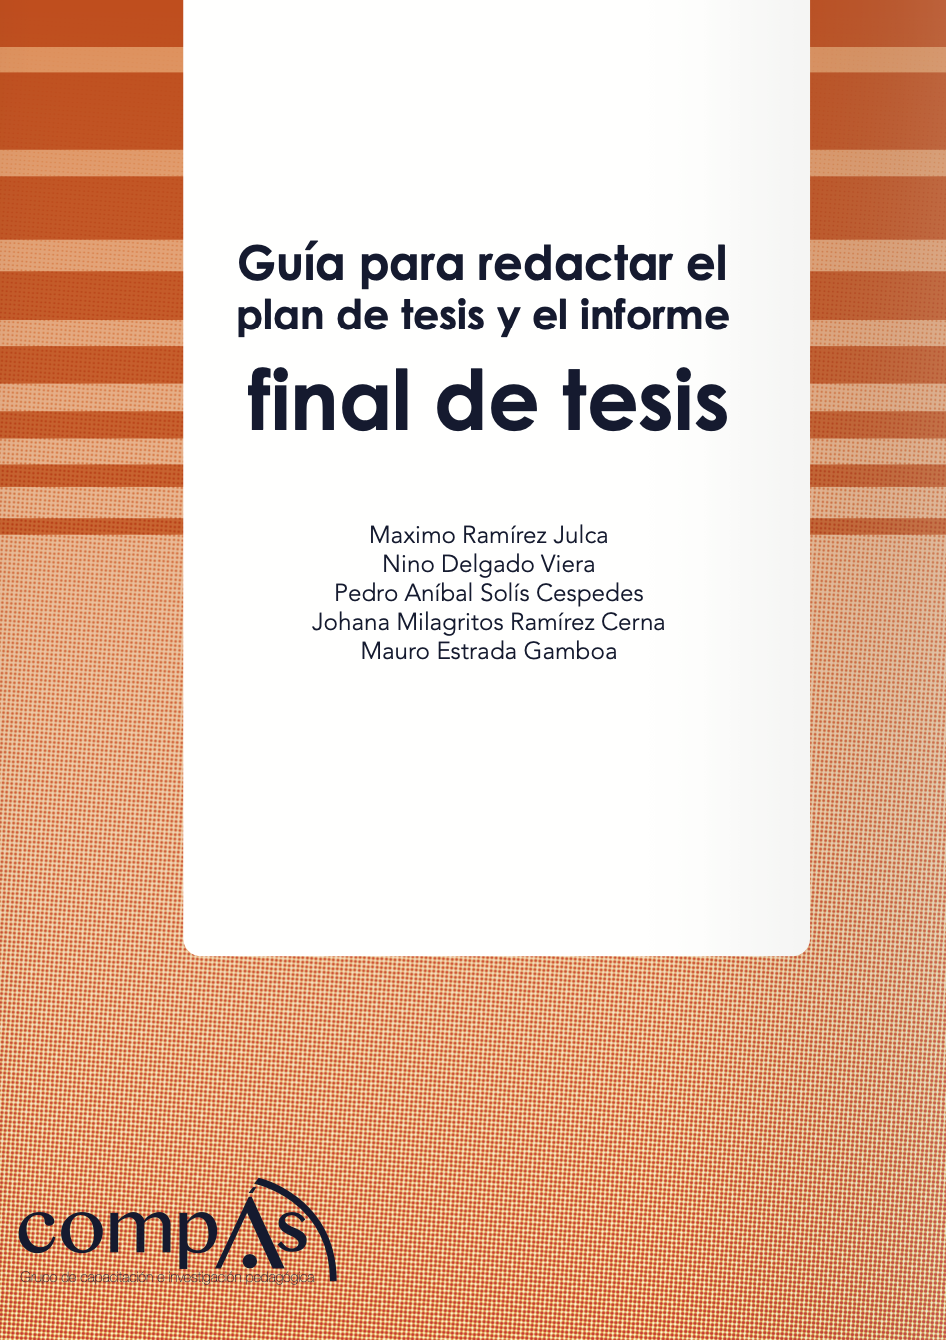 Imagen de portada del libro Guía para redactar el plan de tesis y el informe final de tesis